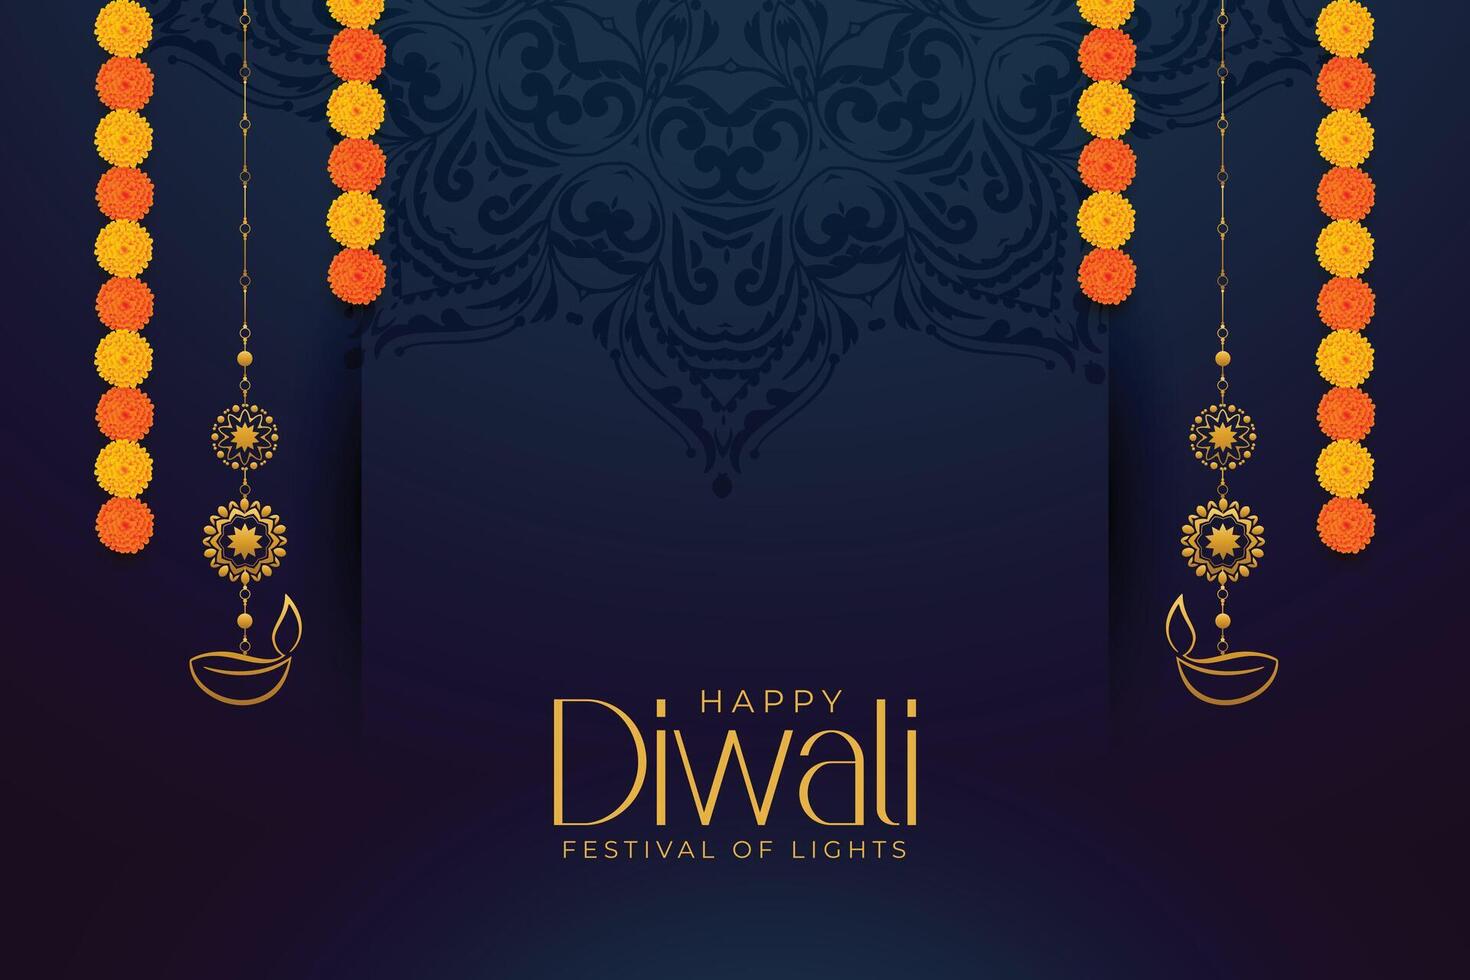 premie shubh diwali groet kaart met lantaarn en bloemen ontwerp vector